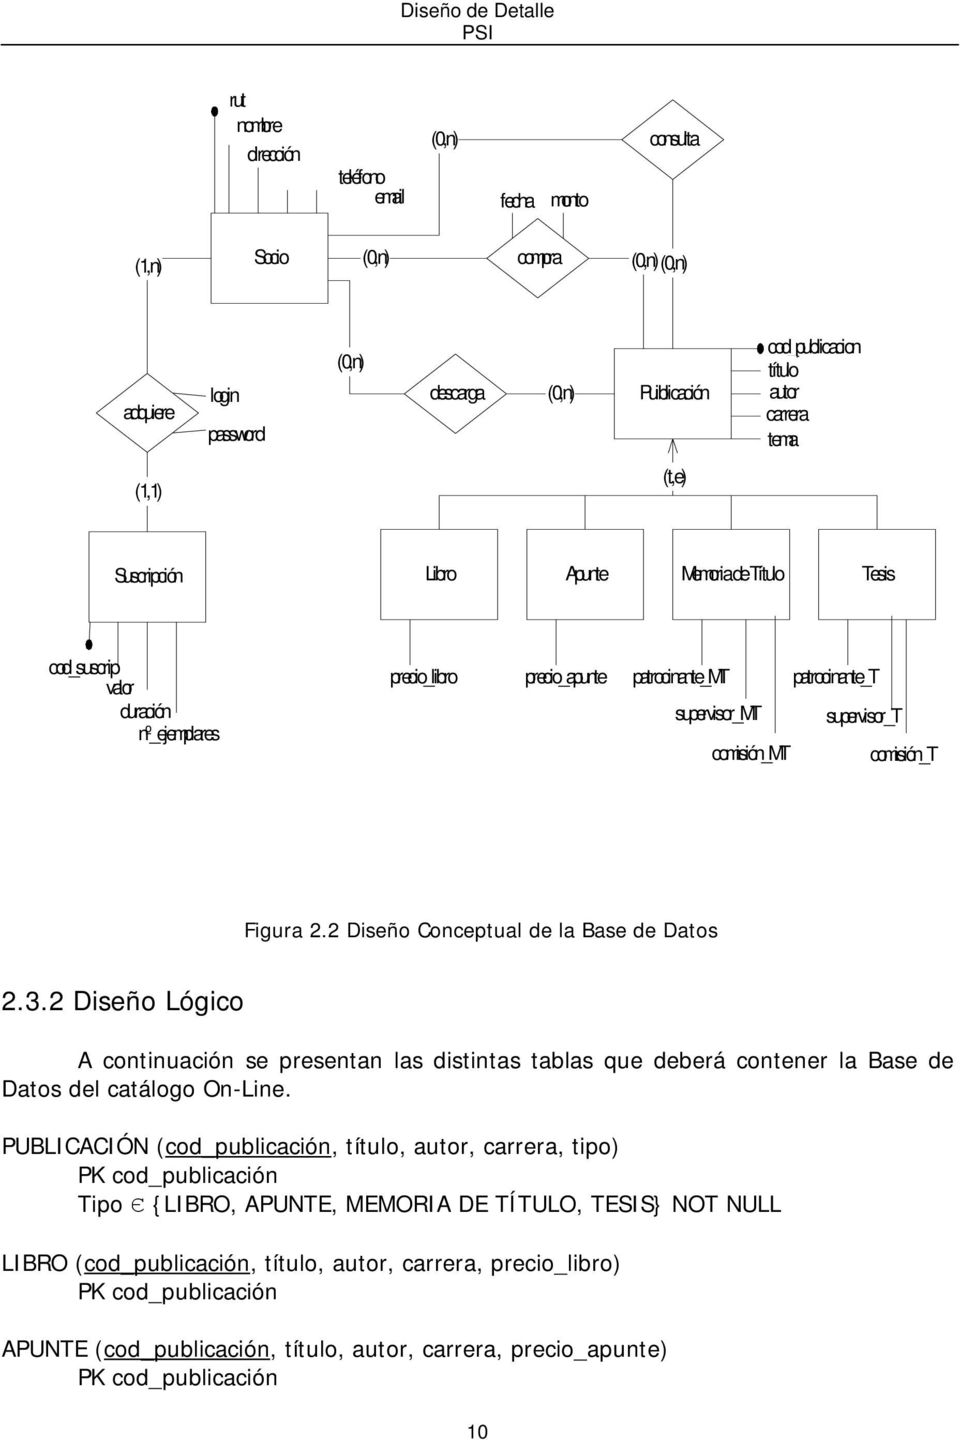 comisión_t Figura 2.2 Diseño Conceptual de la Base de Datos 2.3.2 Diseño Lógico A continuación se presentan las distintas tablas que deberá contener la Base de Datos del catálogo On-Line.